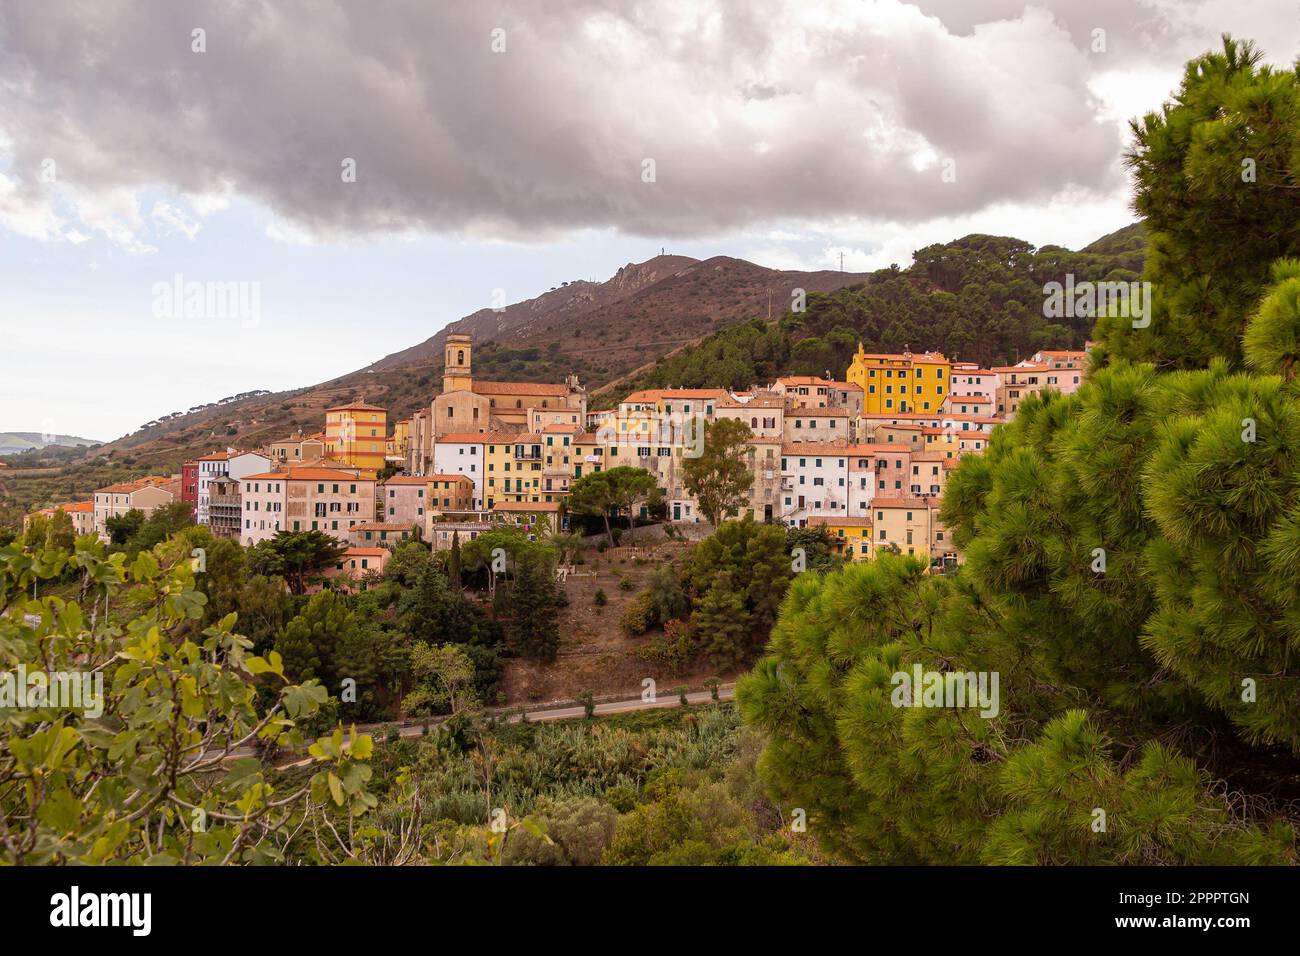 Little mountain village Rio nell' Elba, Island of Elba, Italy Stock Photo